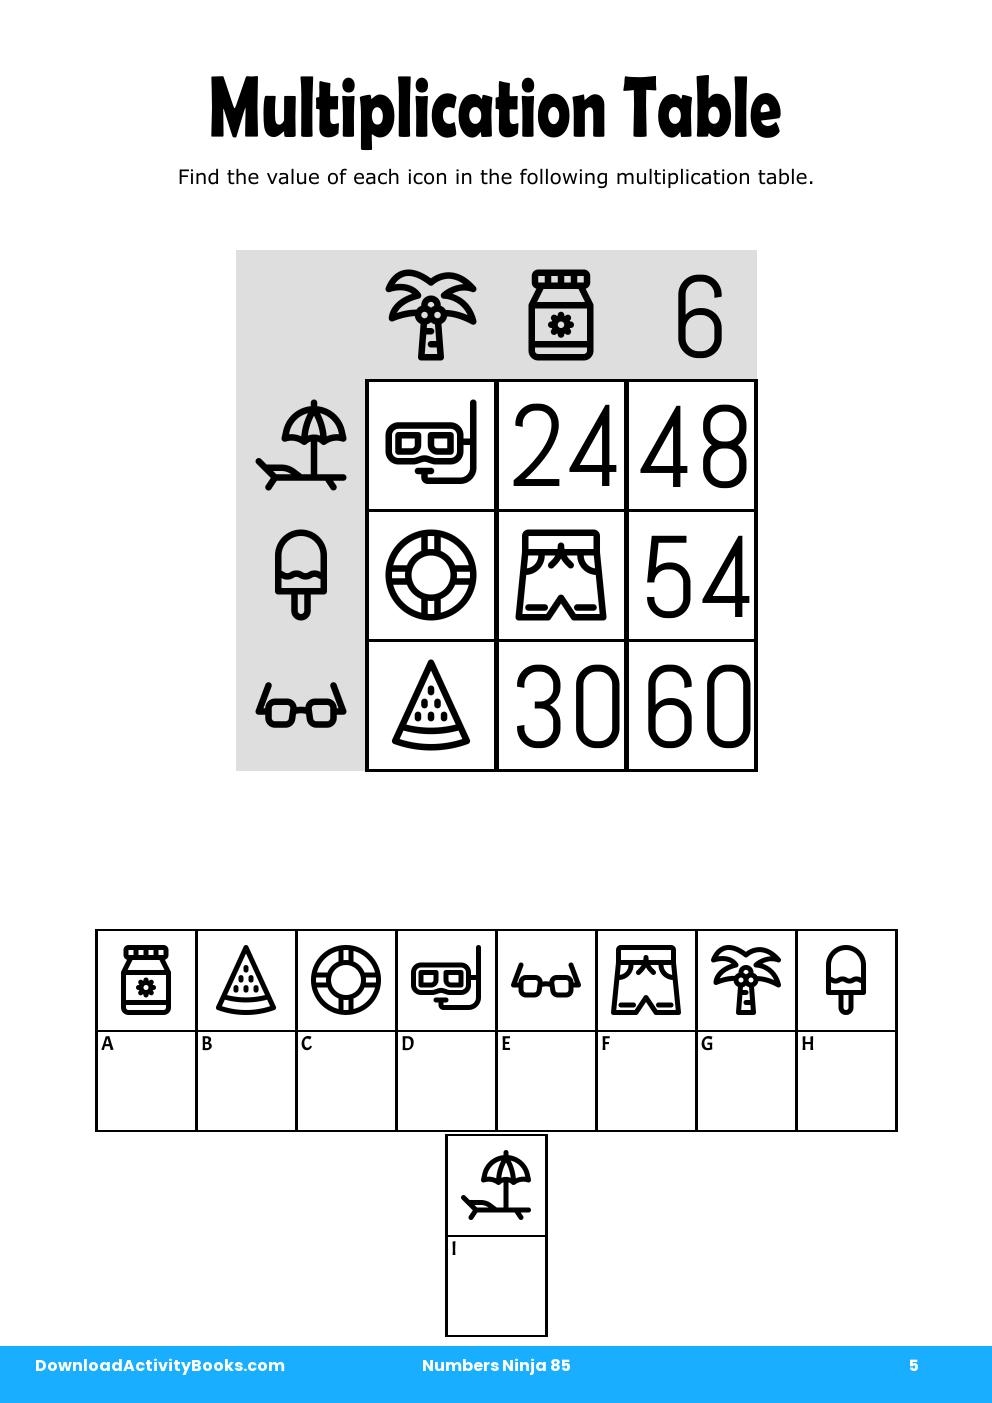 Multiplication Table in Numbers Ninja 85